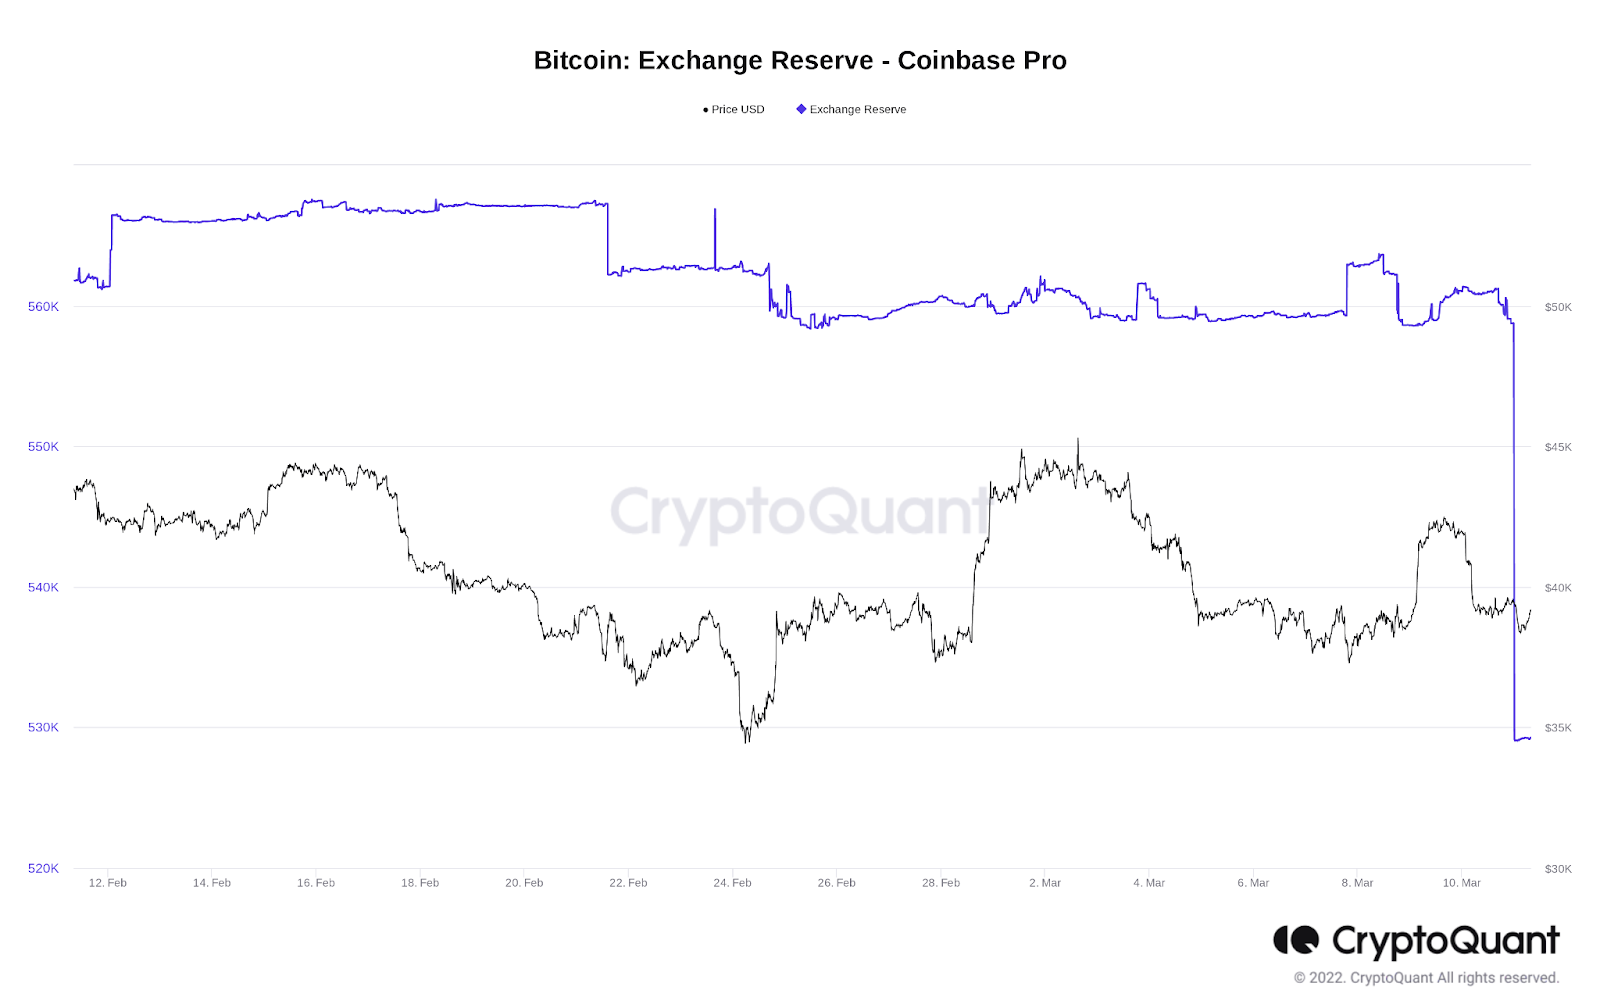 Cá voi tiếp tục gom Bitcoin? Gần 30.000 BTC rời khỏi sàn Coinbase Pro chỉ trong 3 giao dịch